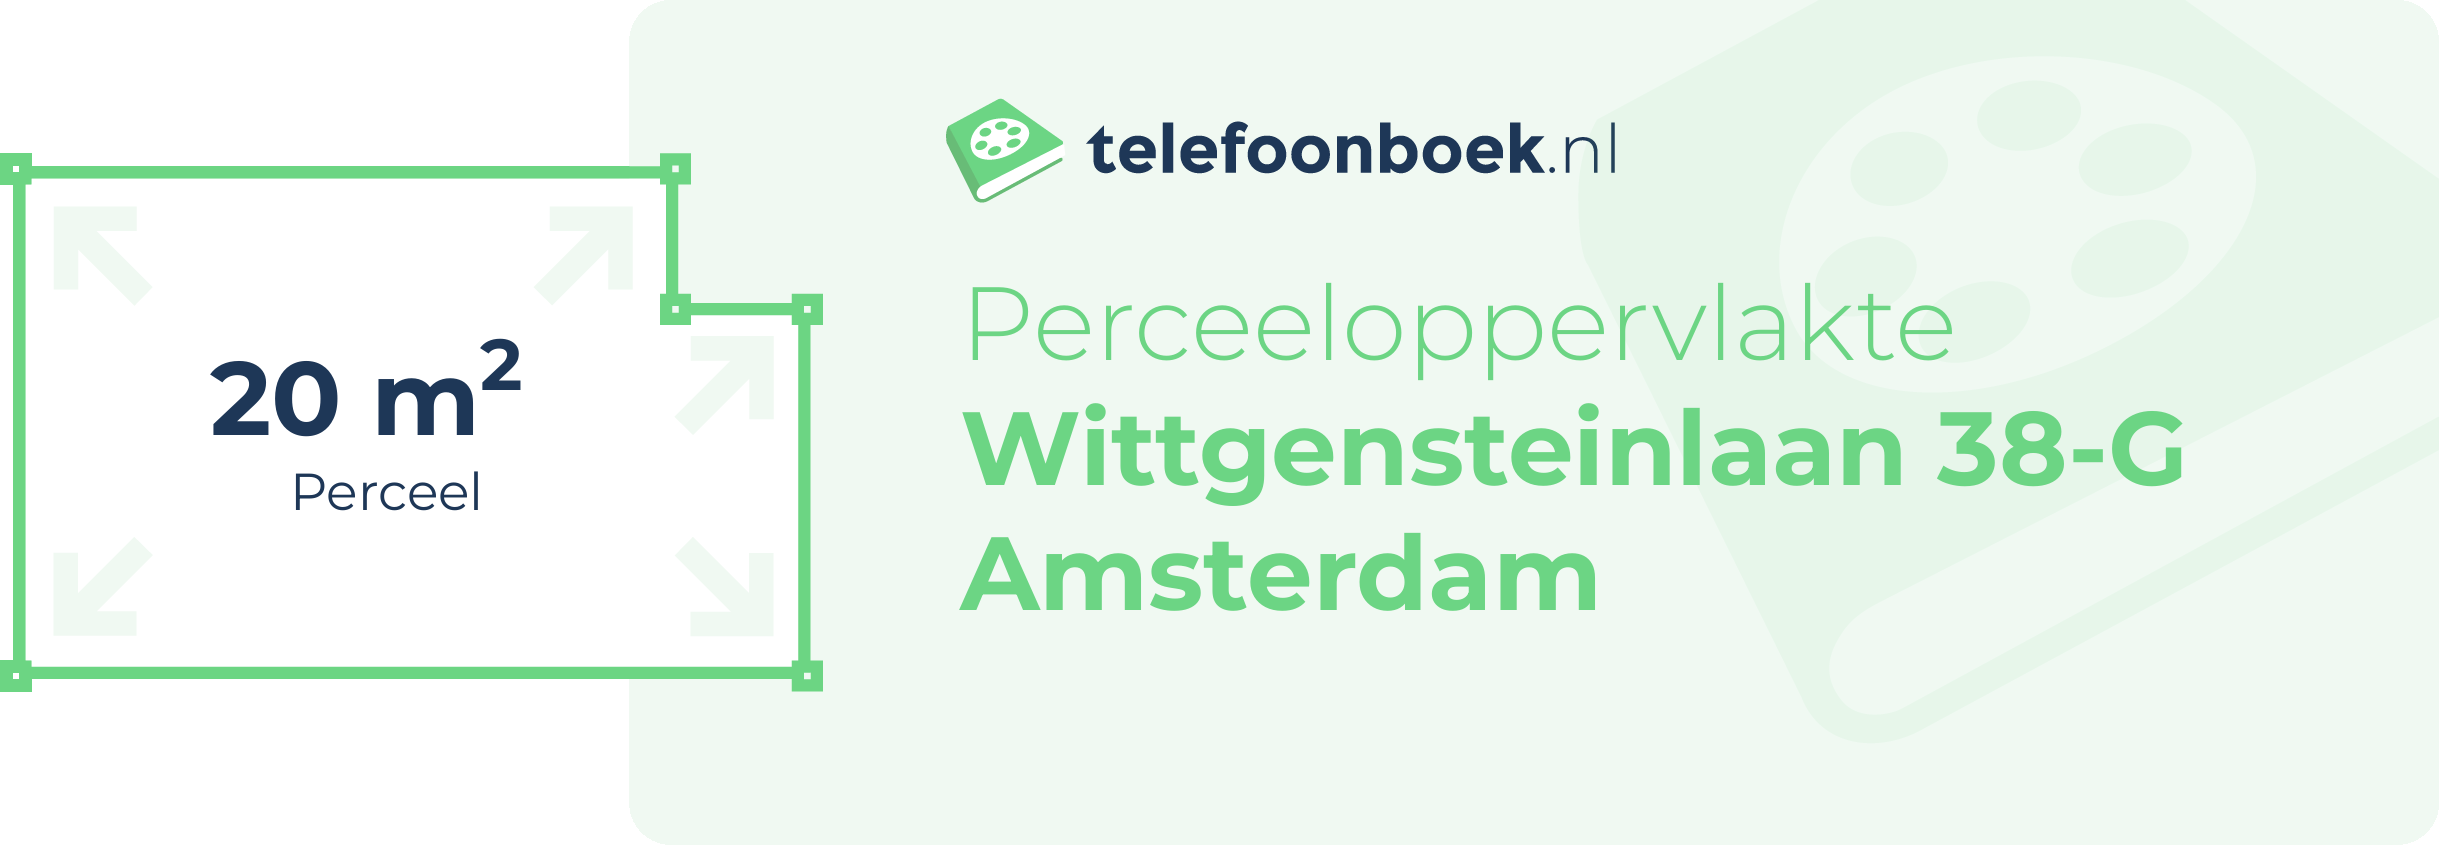 Perceeloppervlakte Wittgensteinlaan 38-G Amsterdam